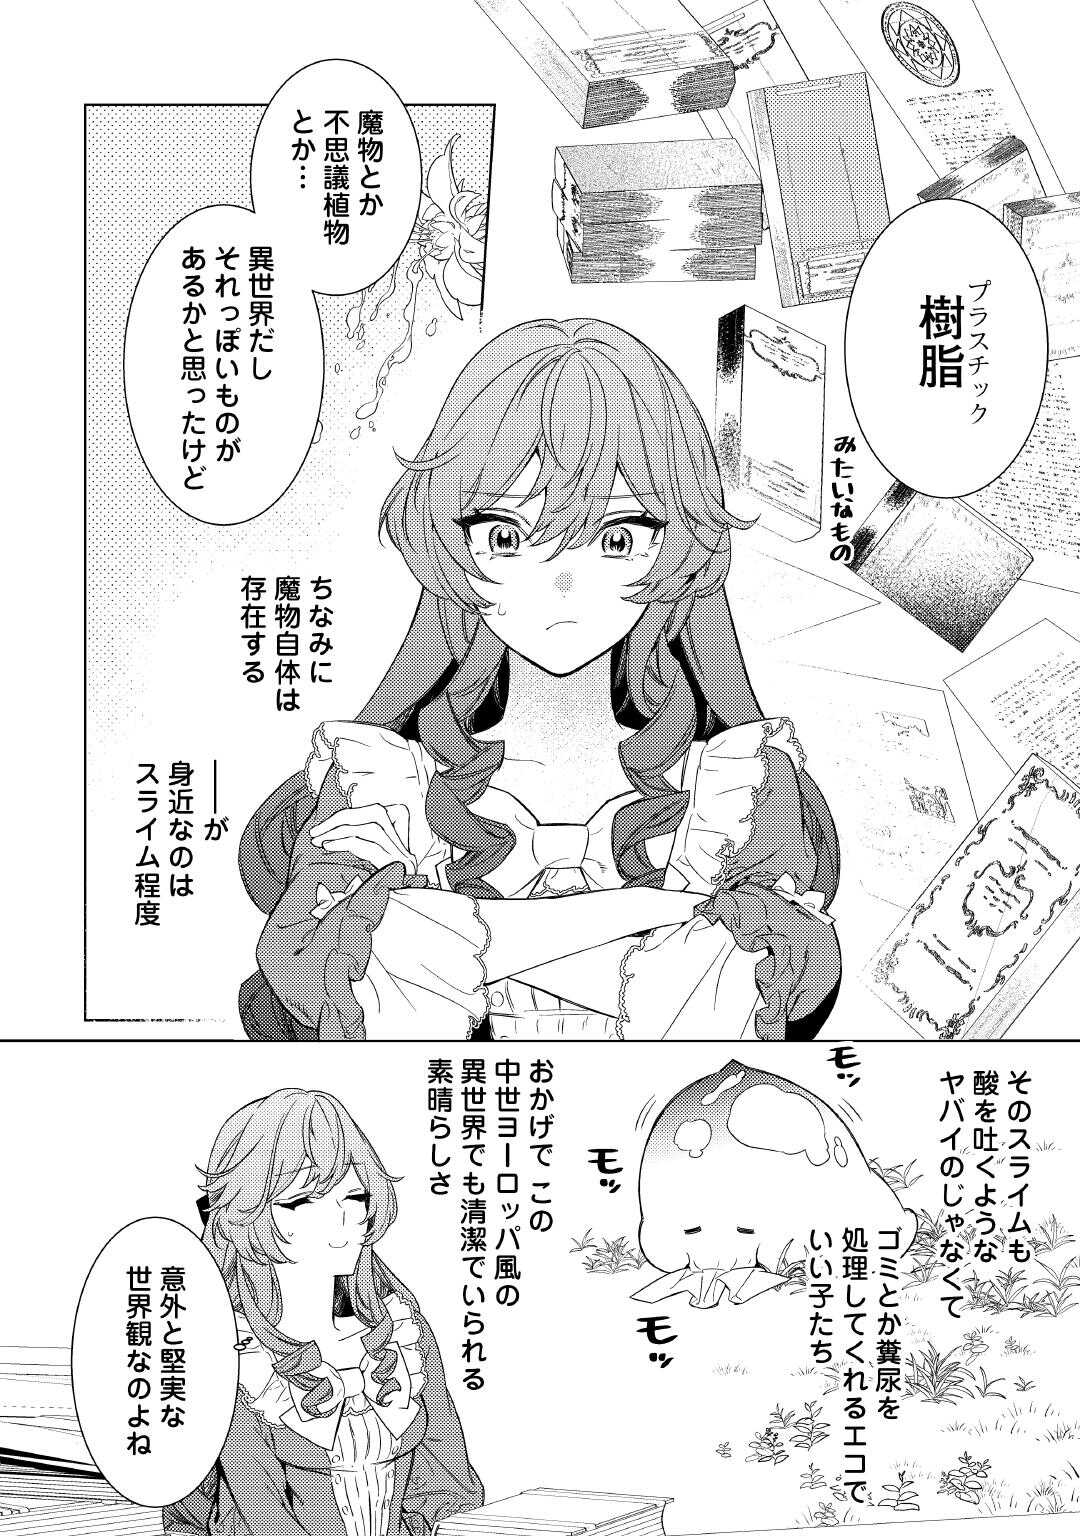 Mamahaha no Kokoroe - Chapter 3 - Page 2